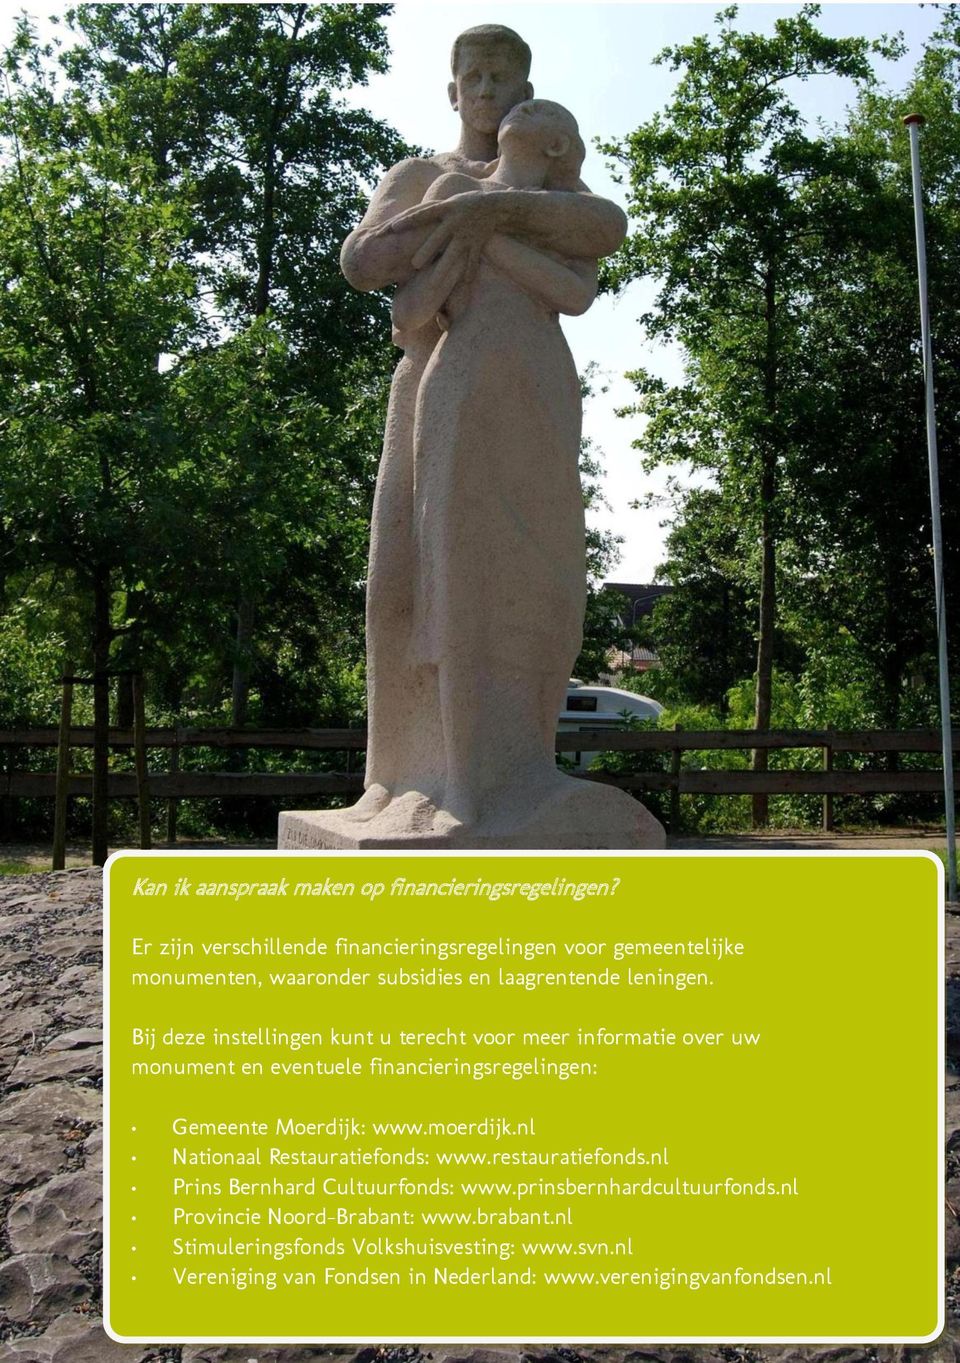 Bij deze instellingen kunt u terecht voor meer informatie over uw monument en eventuele financieringsregelingen: Gemeente Moerdijk: www.moerdijk.